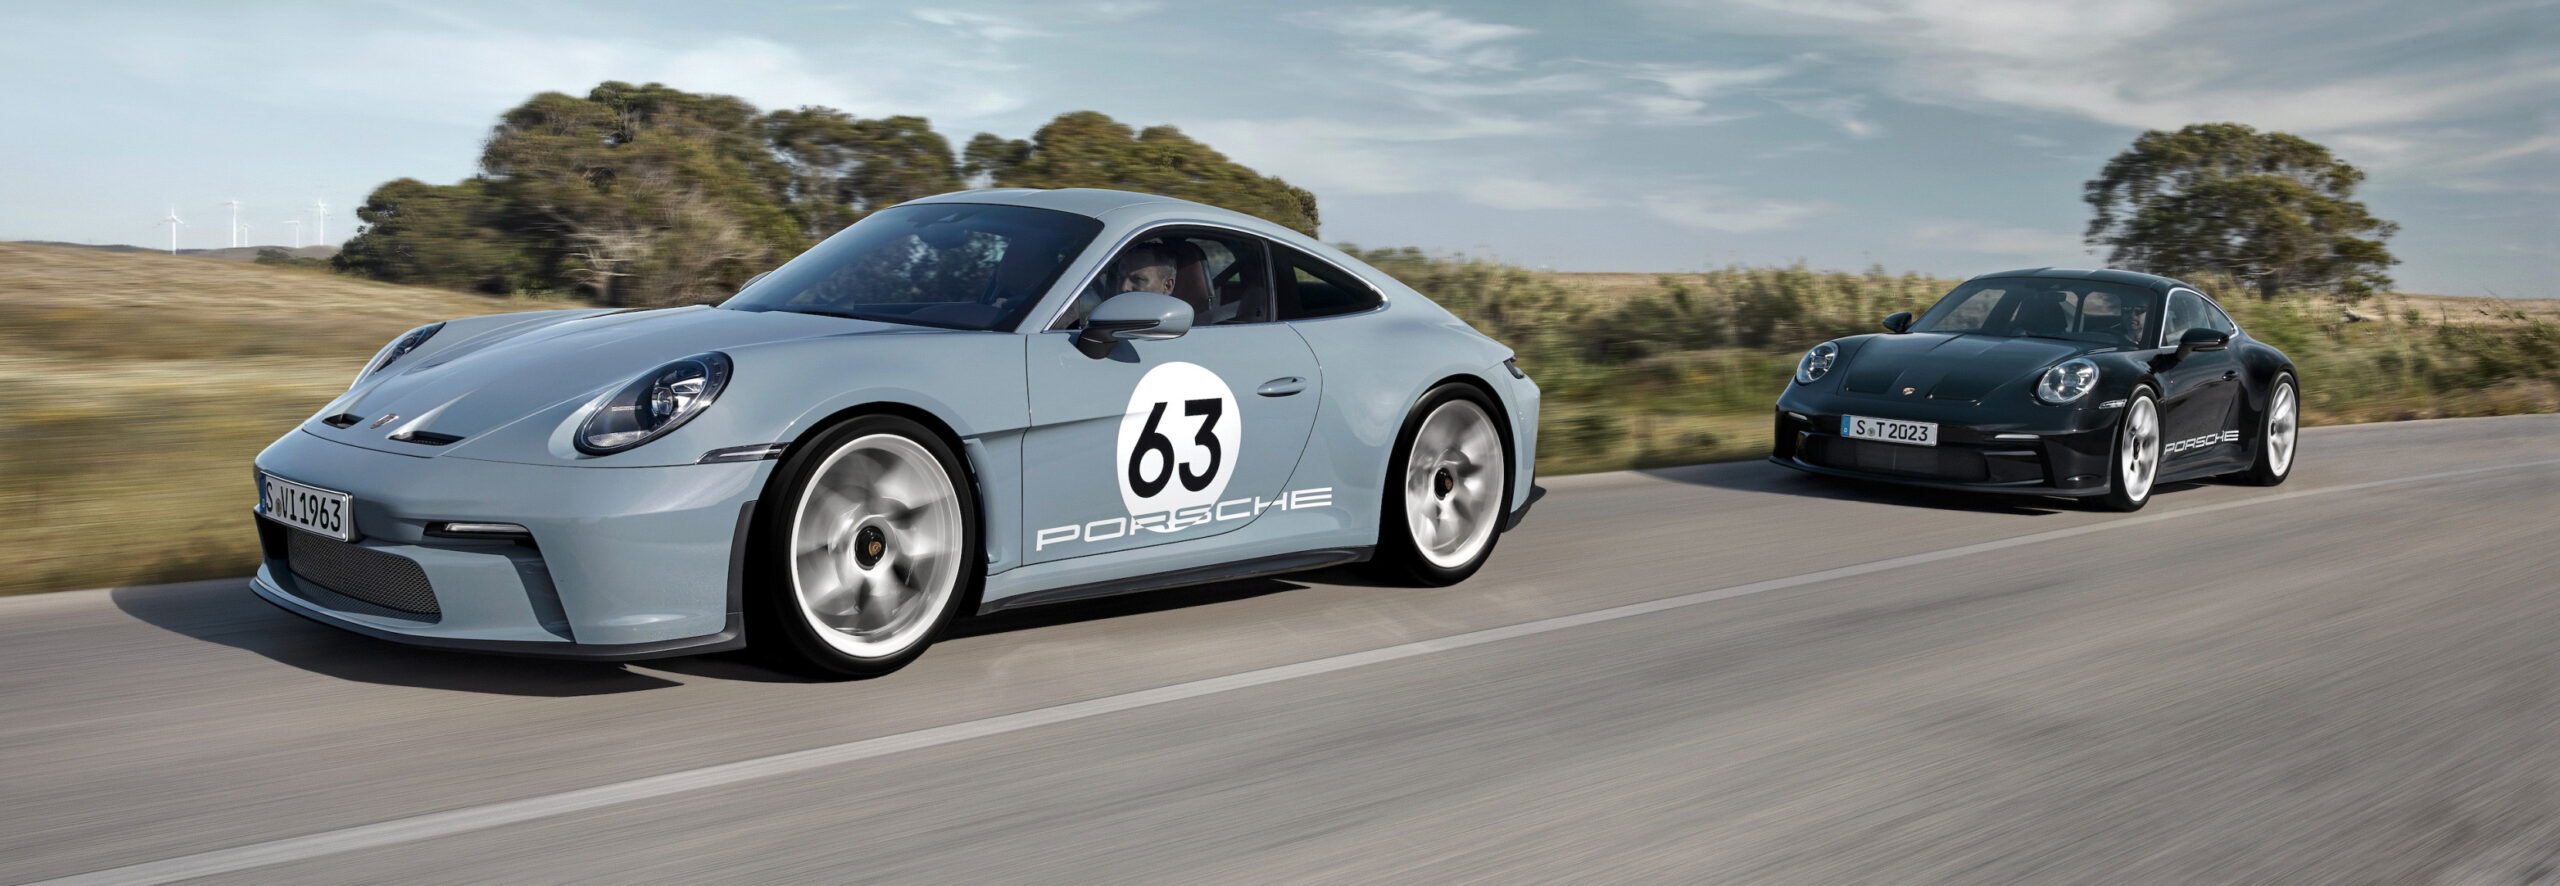 Nuevo Porsche 911 S/T